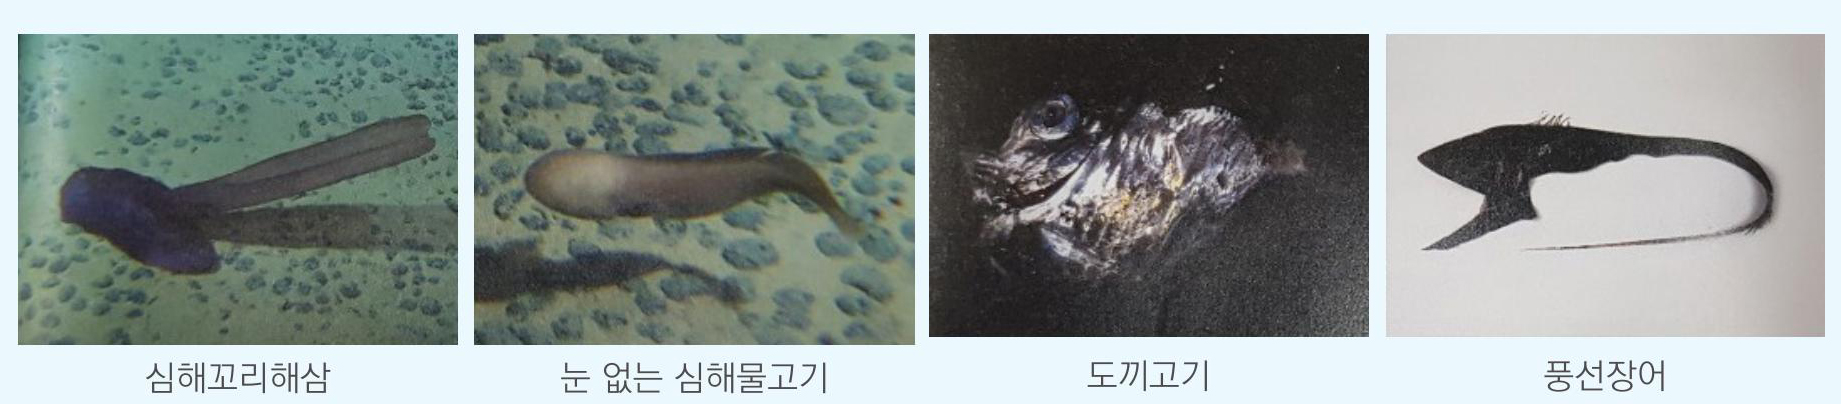 심해꼬리해삼, 눈 없는 심해물고기, 도끼고기, 풍선장어에 대한 이미지